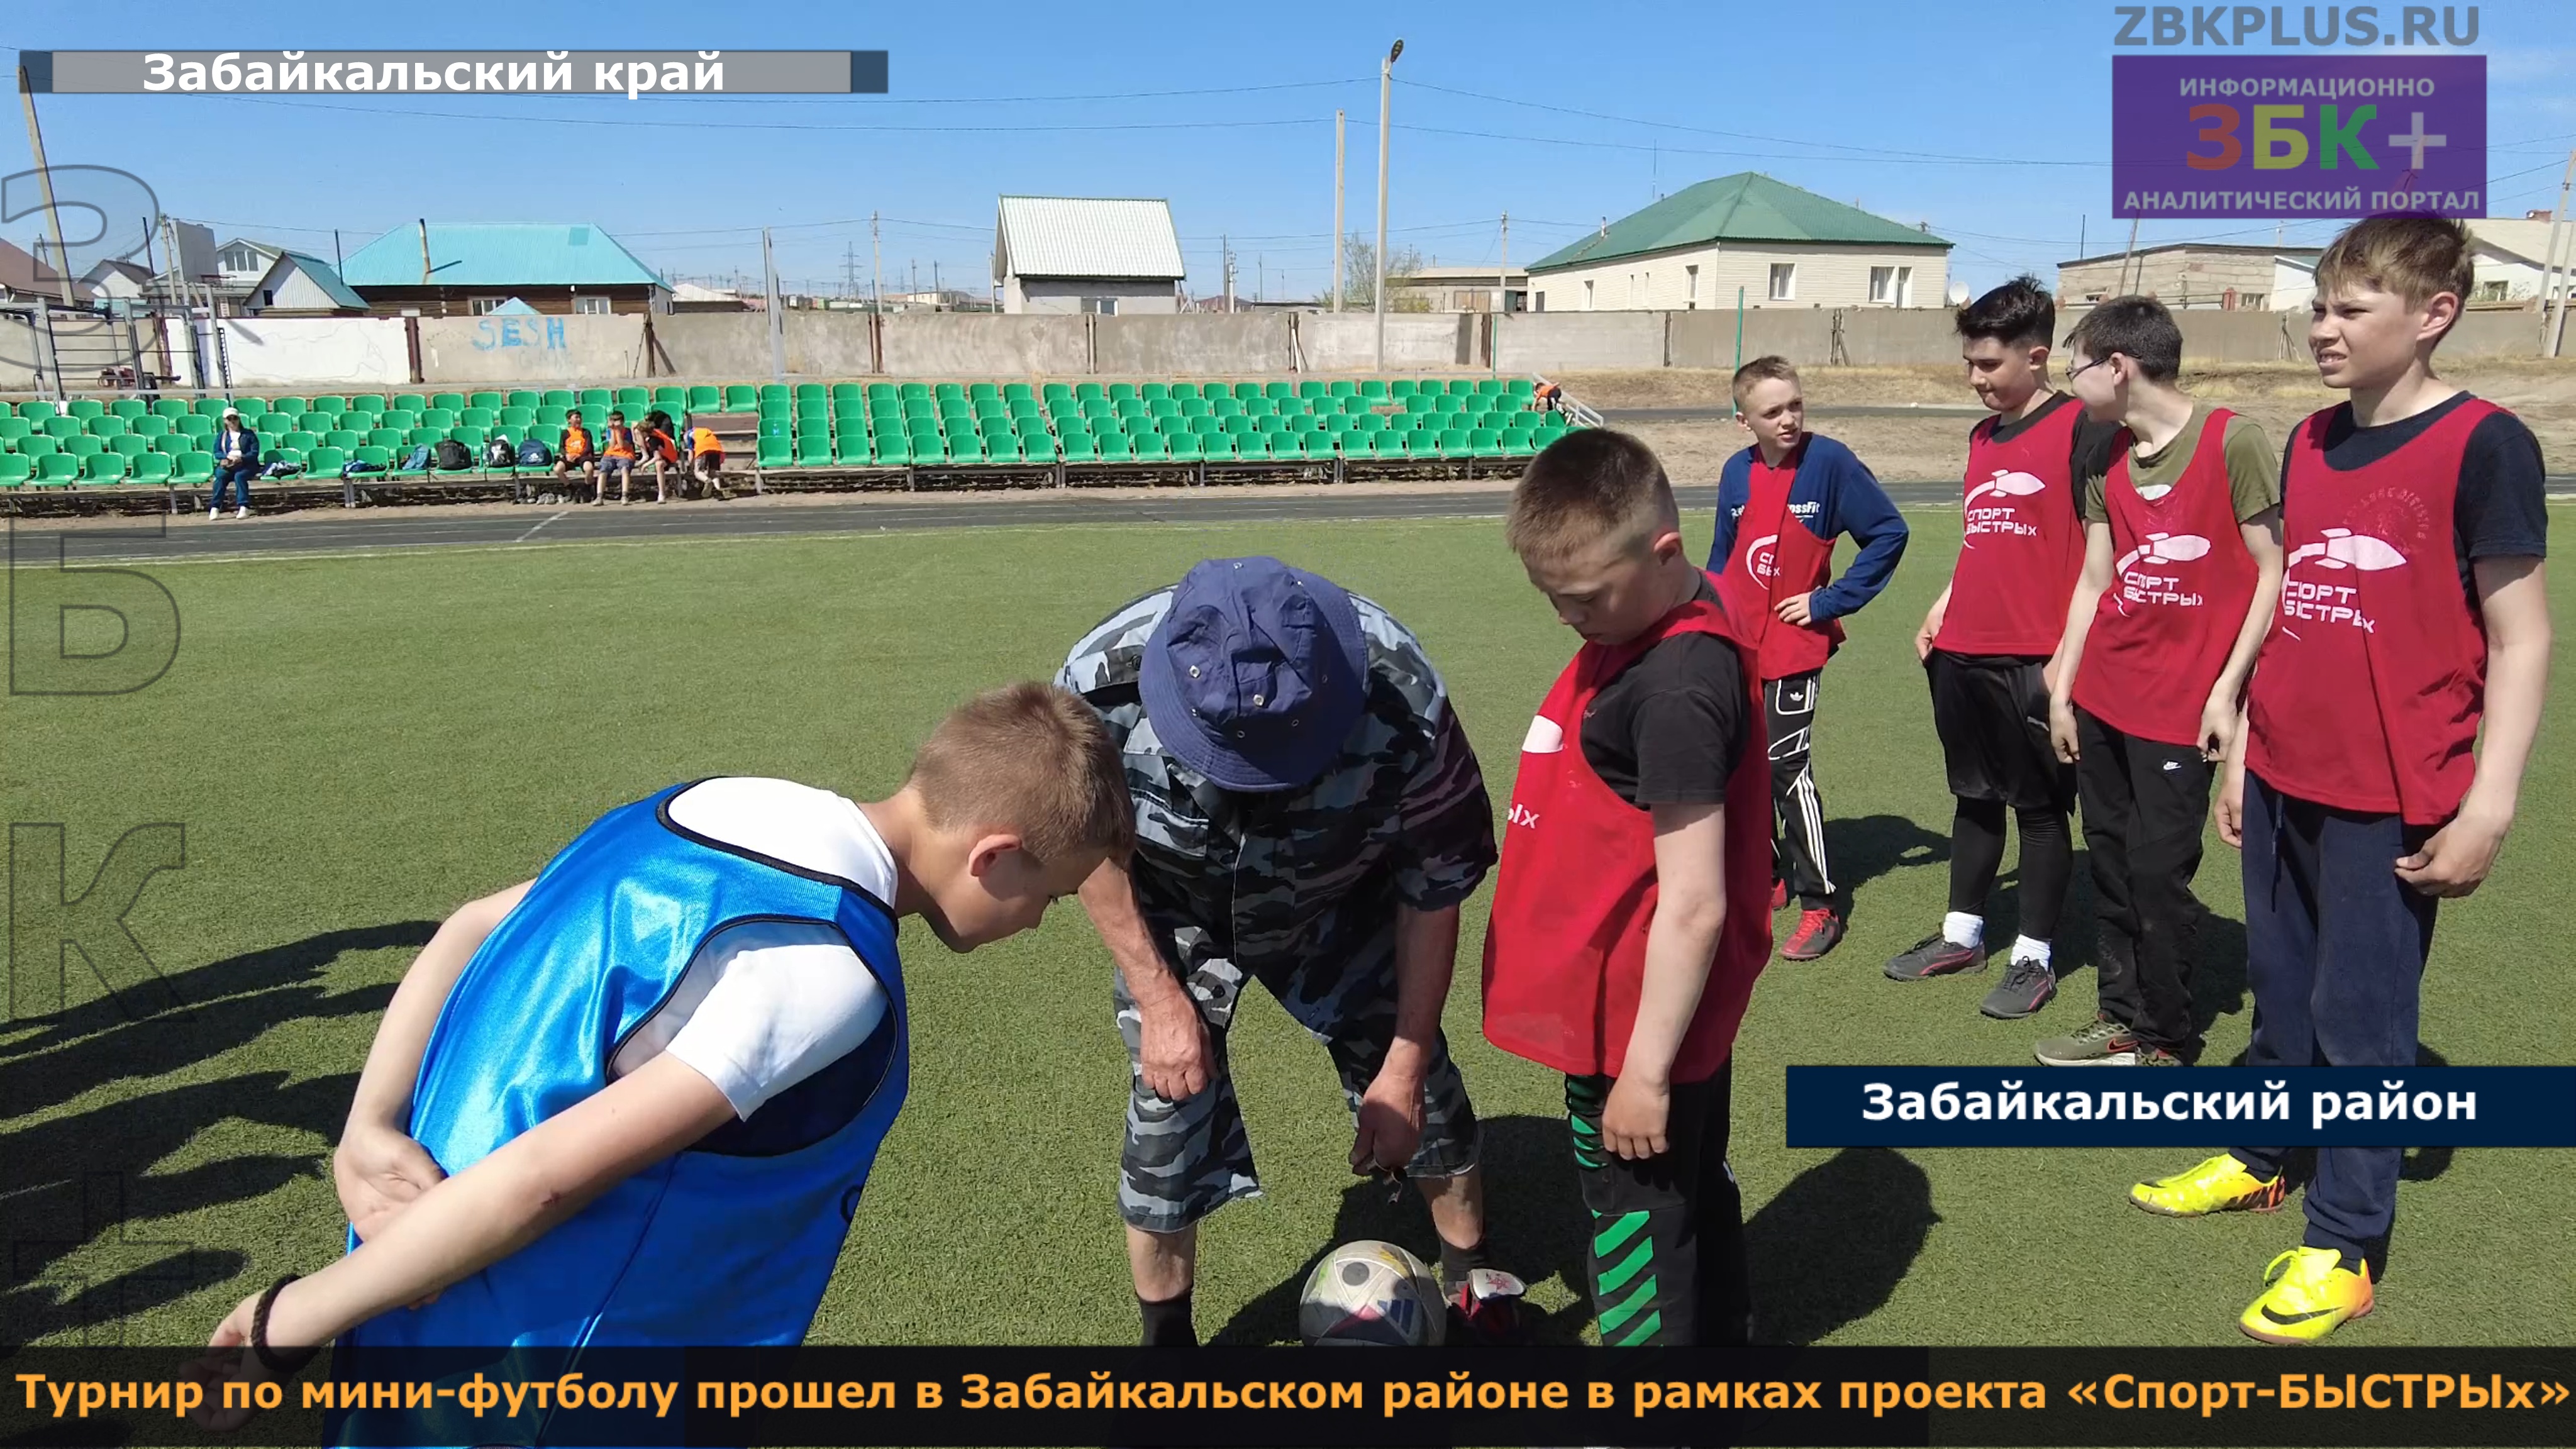 Турнир по мини-футболу прошел в Забайкальском районе в рамках проекта «Спорт-БЫСТРЫх».